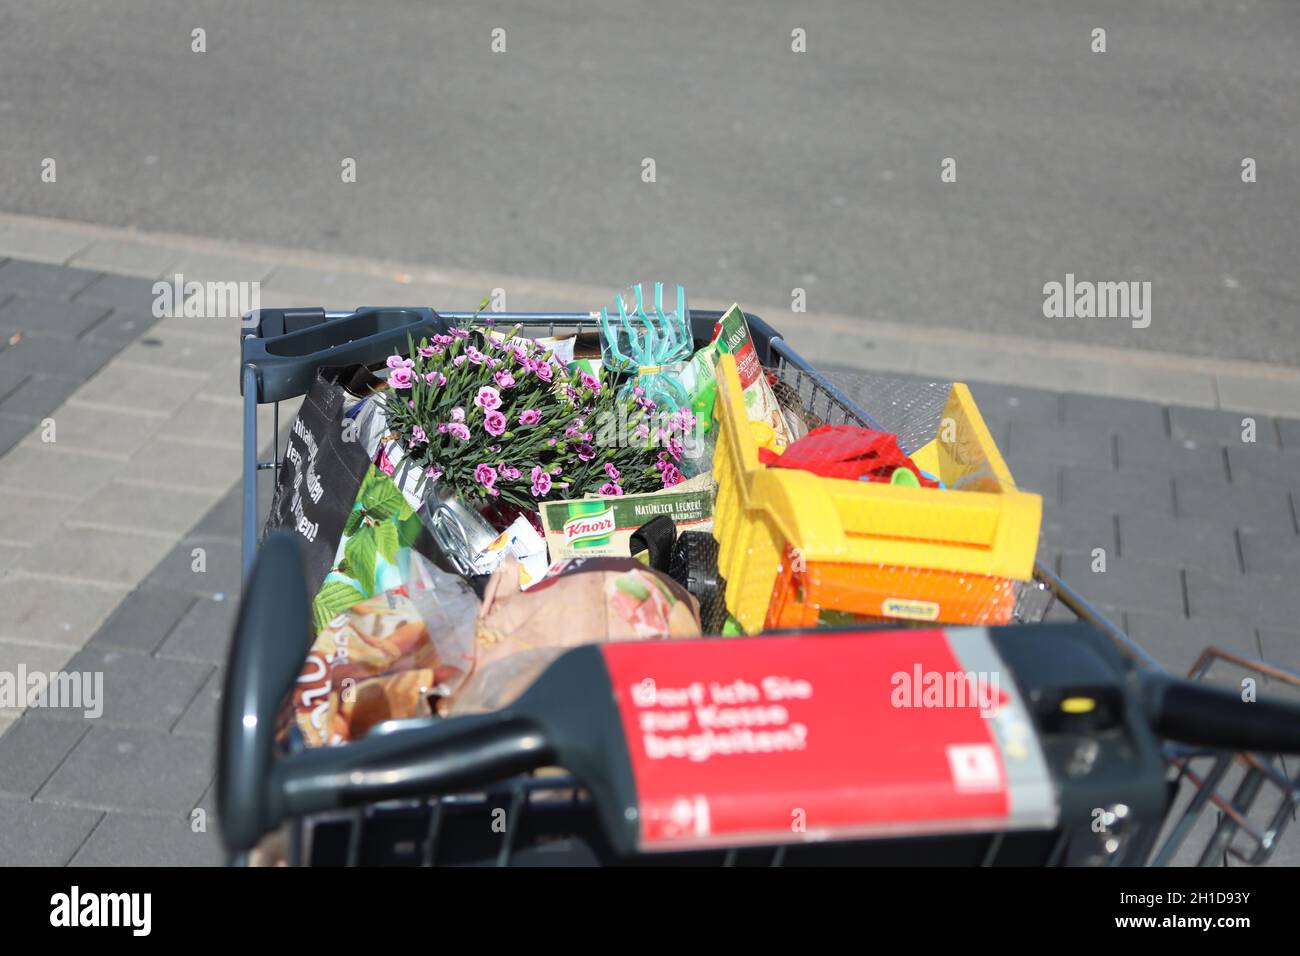 Voller Einkaufswagen vor dem Discounter Kaufland, mit Lebensmittel, Blumen und Spielsachen, Themenbild - Handel - Wirtschaft - Industrie Stock Photo